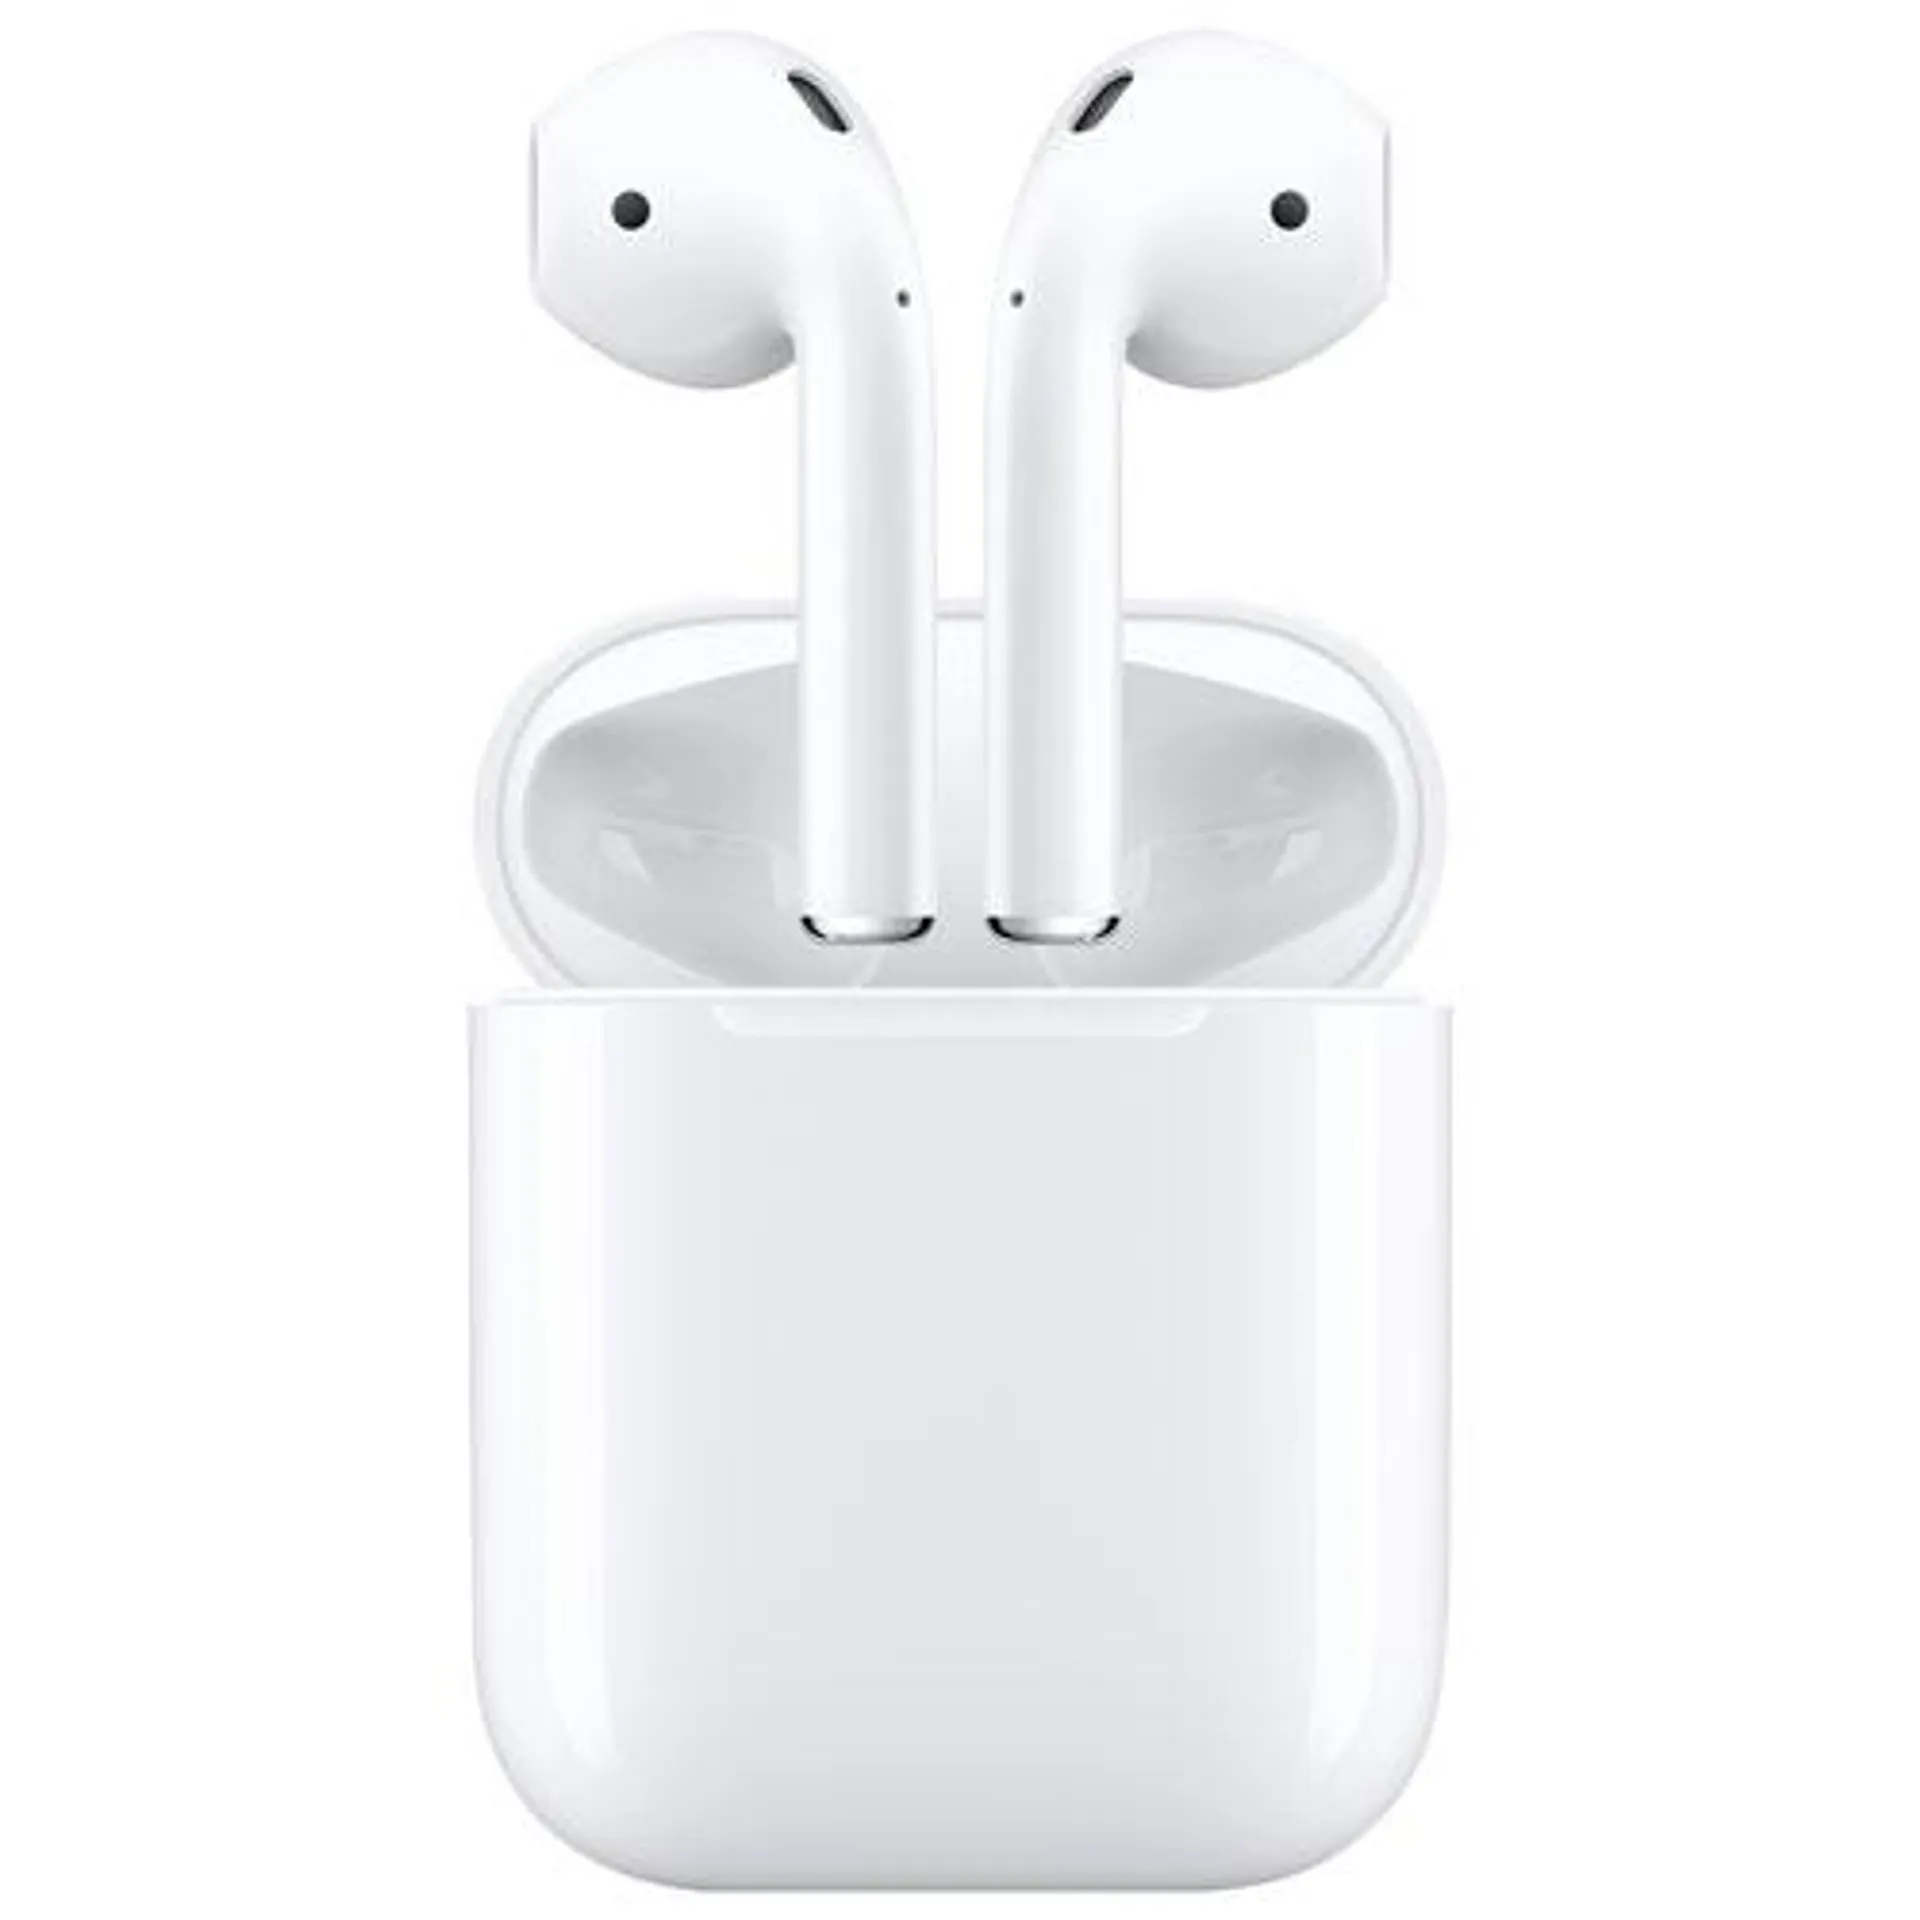 Apple AirPods (2nd generation) In-Ear True Wireless Earbuds - White